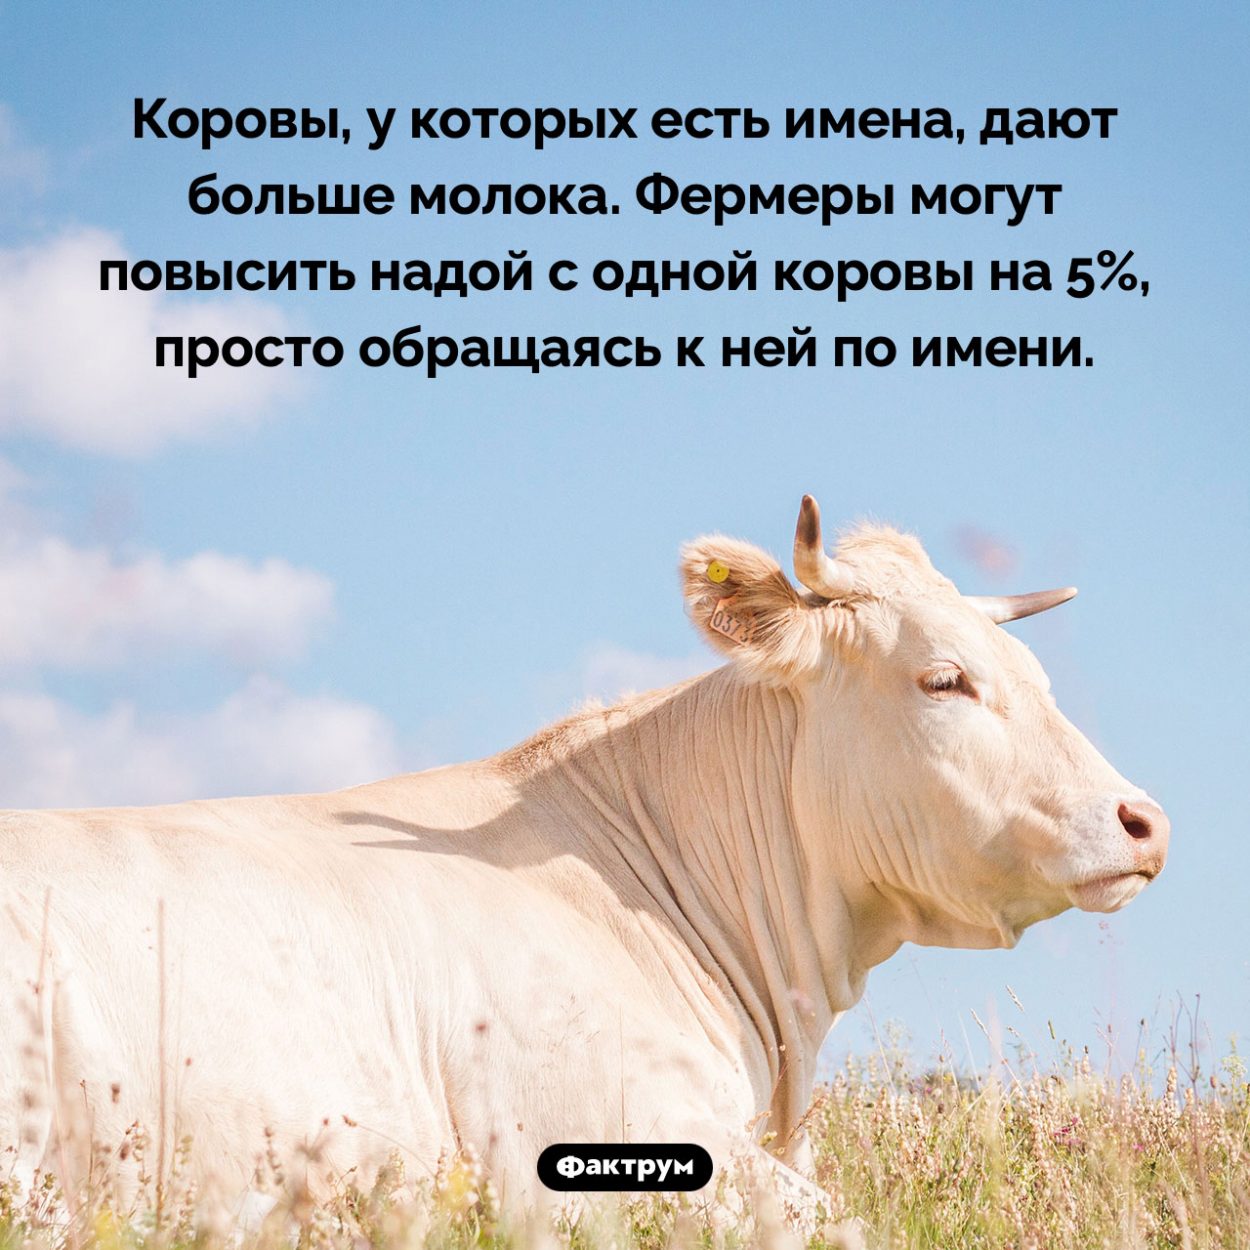 Коровы, у которых есть имена, дают больше молока. Коровы, у которых есть имена, дают больше молока. Фермеры могут повысить надой с одной коровы на 5%, просто обращаясь к ней по имени.